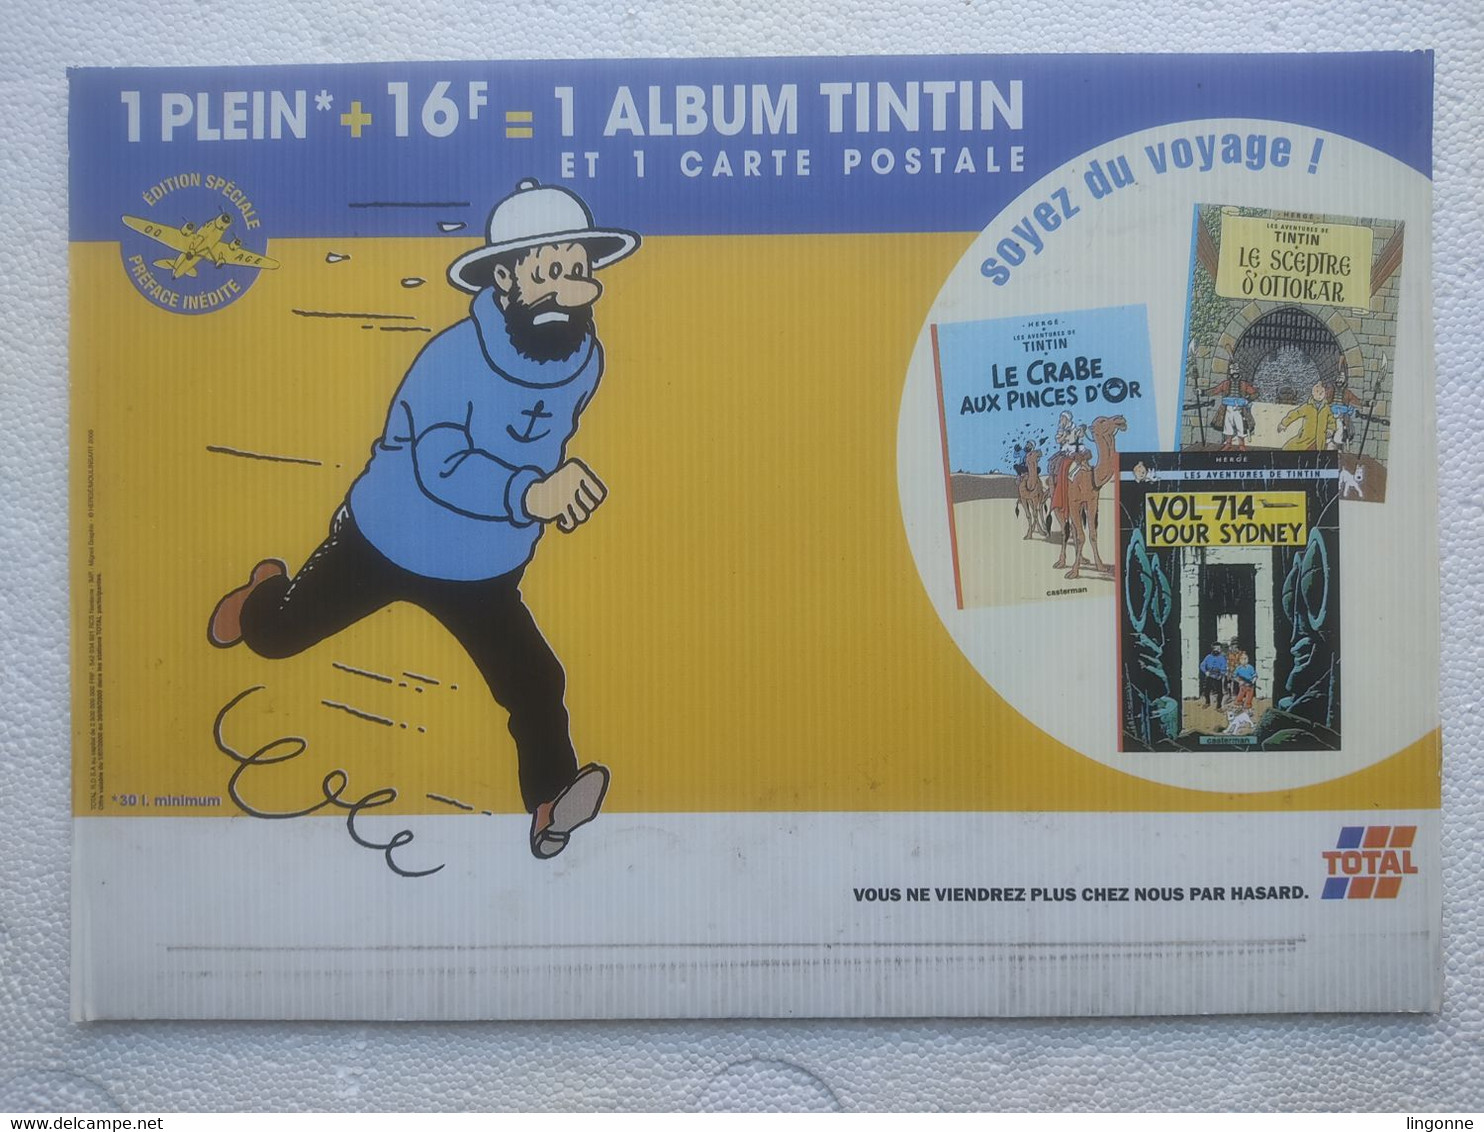 1999 TINTIN PANNEAU PUBLICITAIRE Plastique TOTAL Publicité Sur Point De Vente CAPITAINE HADDOCK Hergé Moulinsart 2000 - Plakate & Offsets